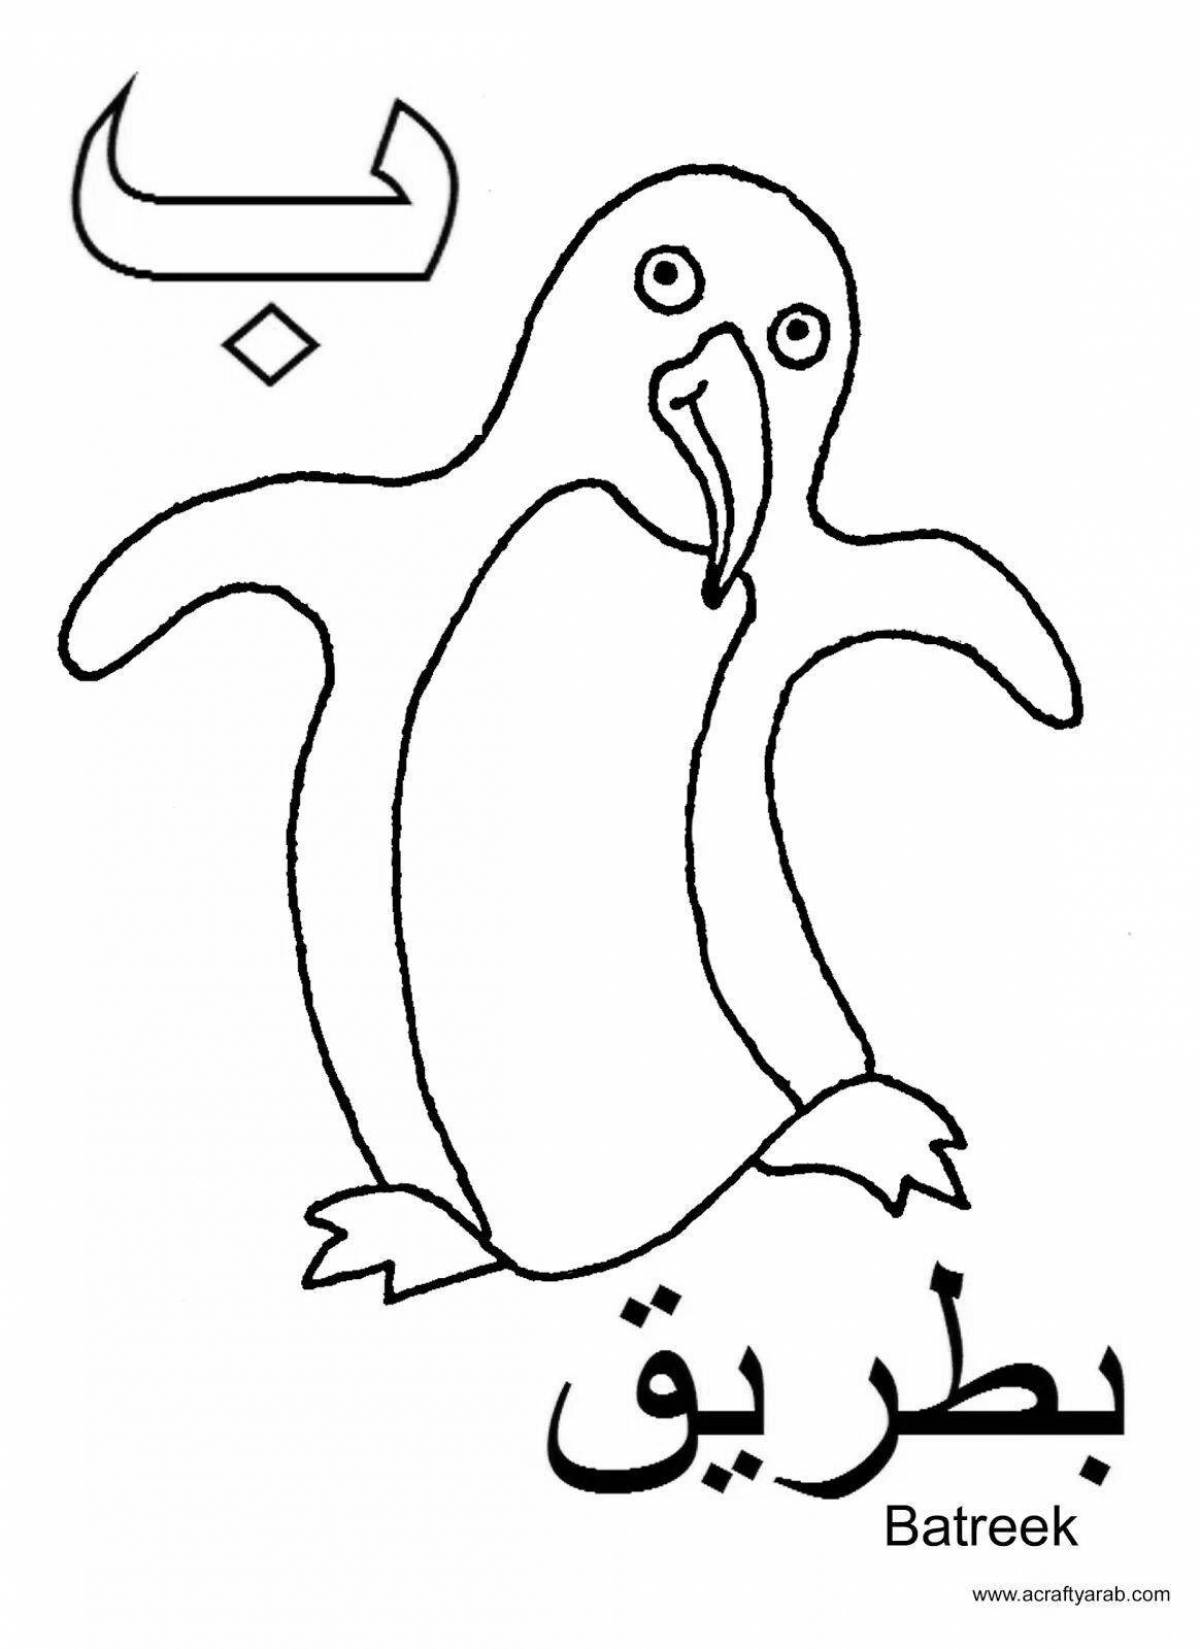 Красочная страница-раскраска арабского алфавита для дошкольников